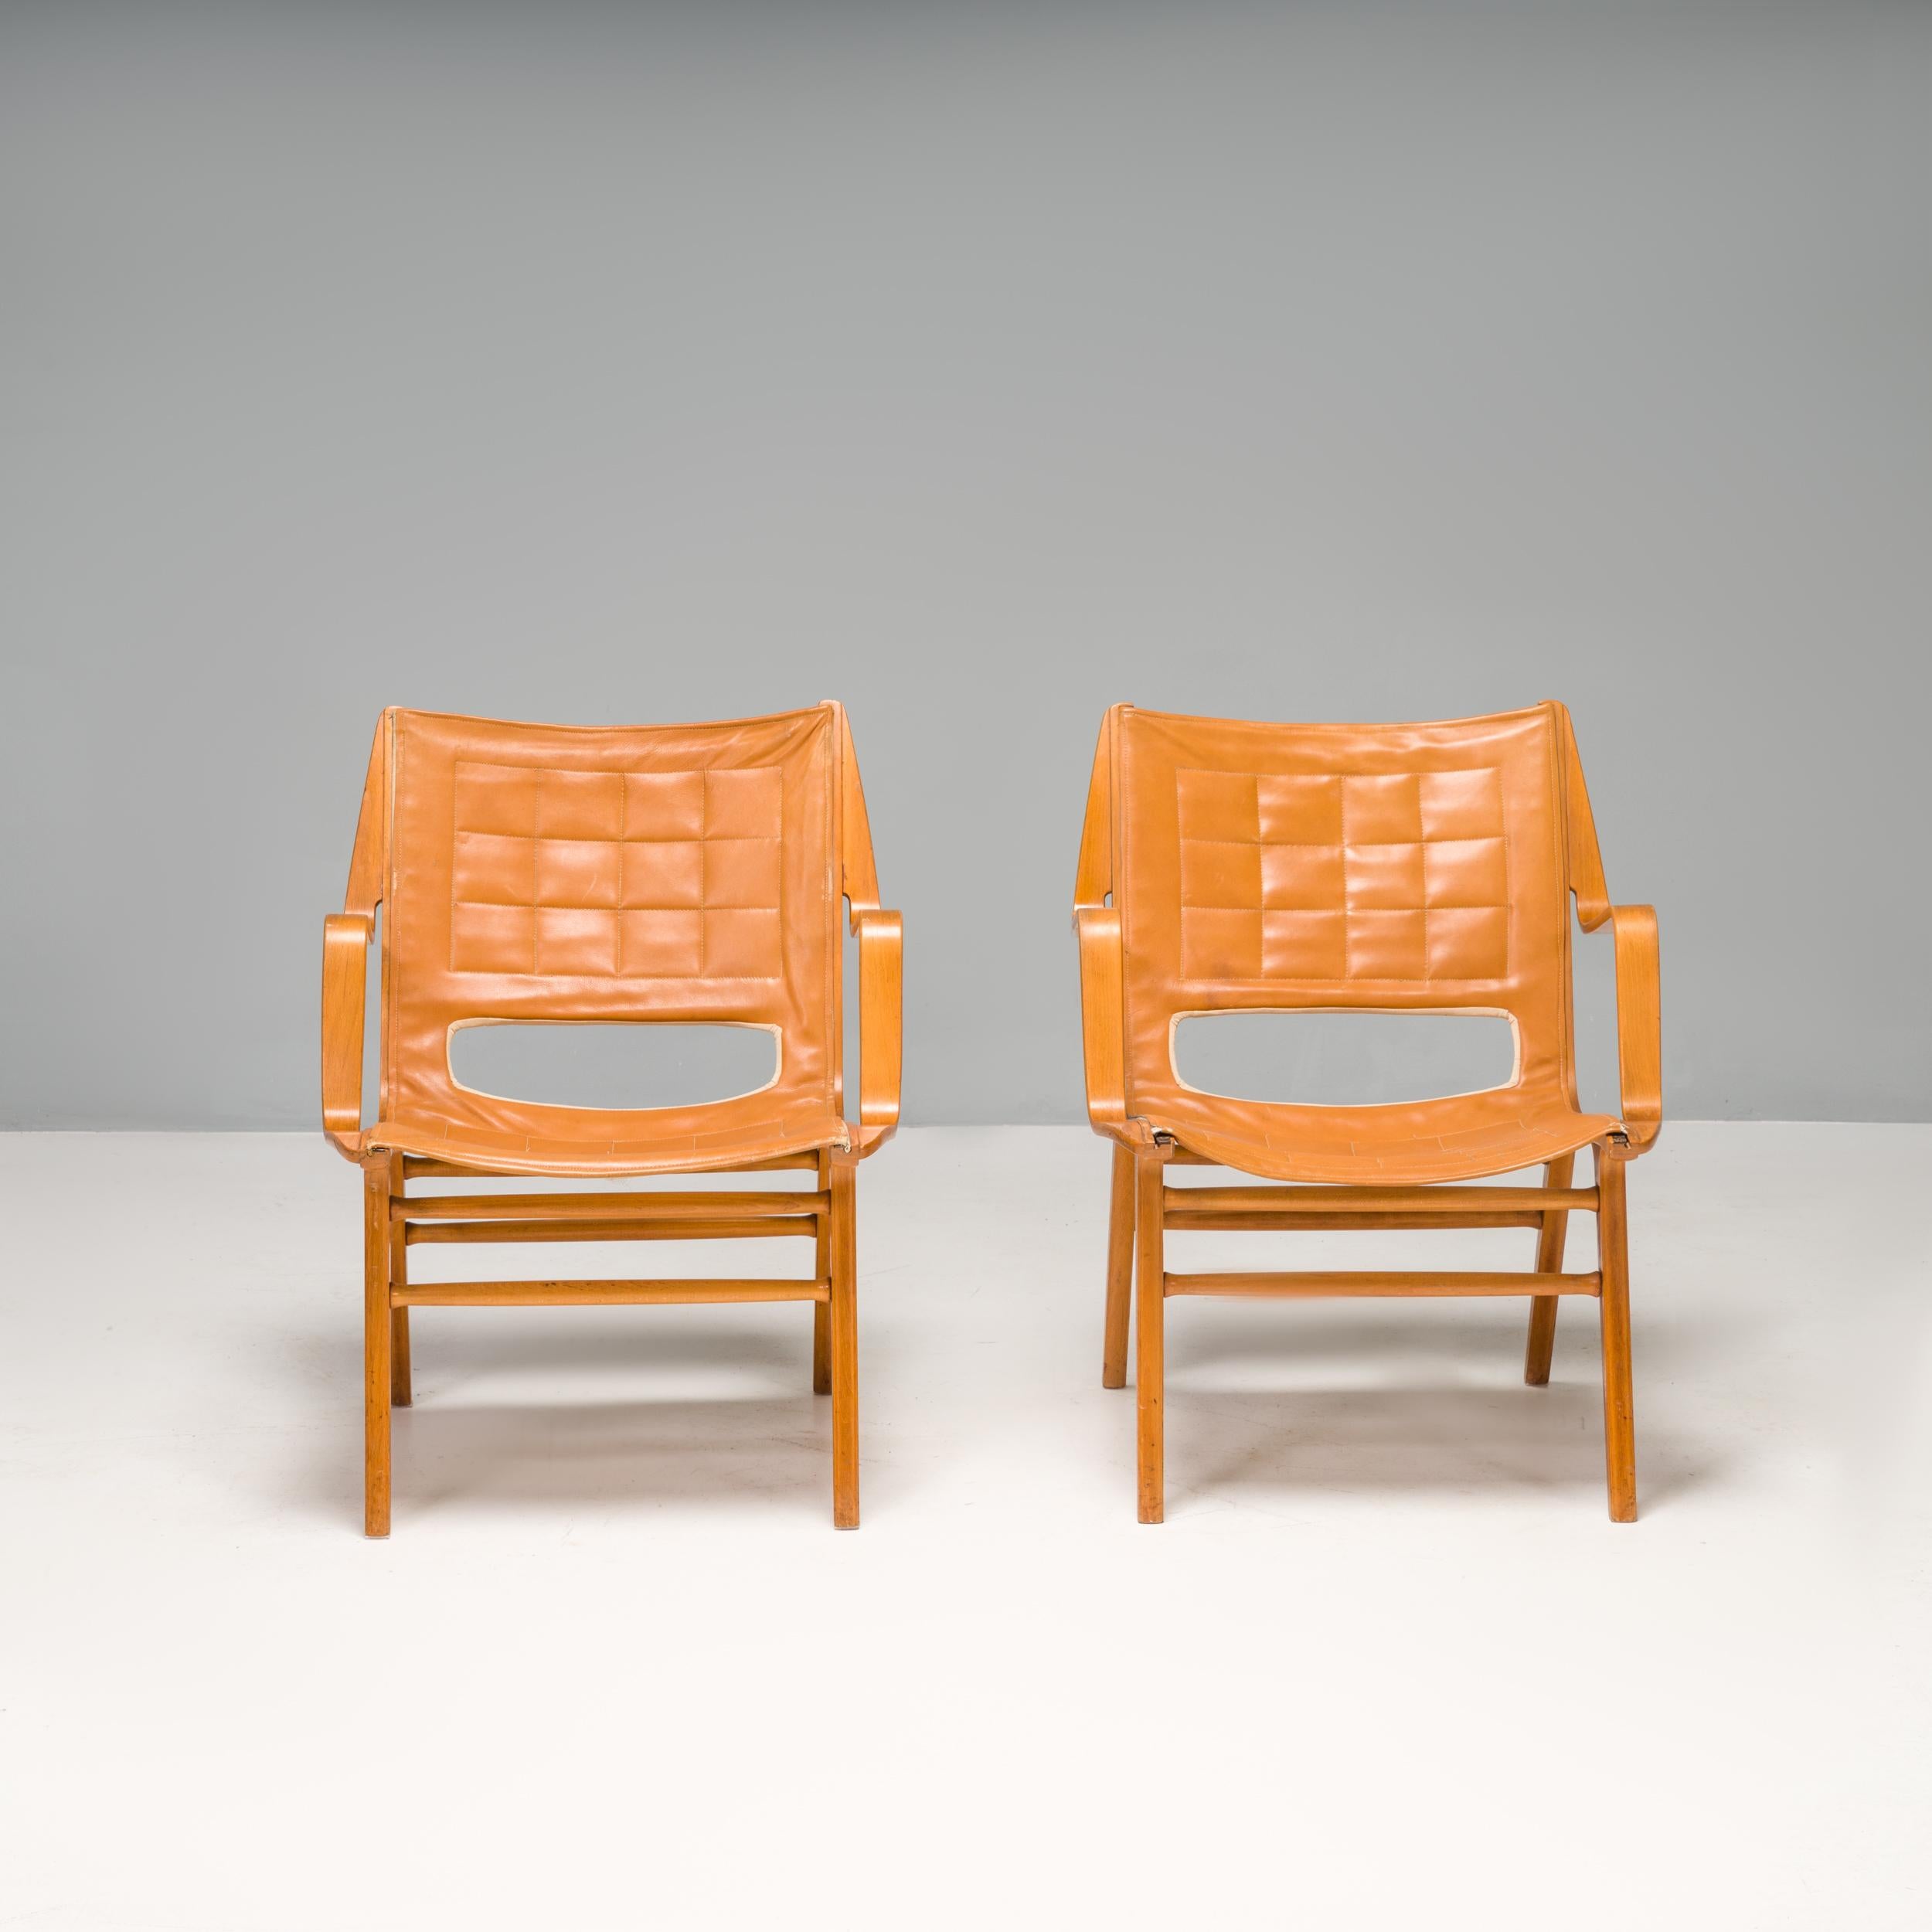 Der 1947 von den dänischen Architekten Peter Hvidt & Orla Mølgaard-Nielsen entworfene Stuhl AX 6060 wurde von Fritz Hansen hergestellt.

Die AX-Stühle sind ein fantastisches Beispiel für das dänische Design der Jahrhundertmitte. Sie bestehen aus